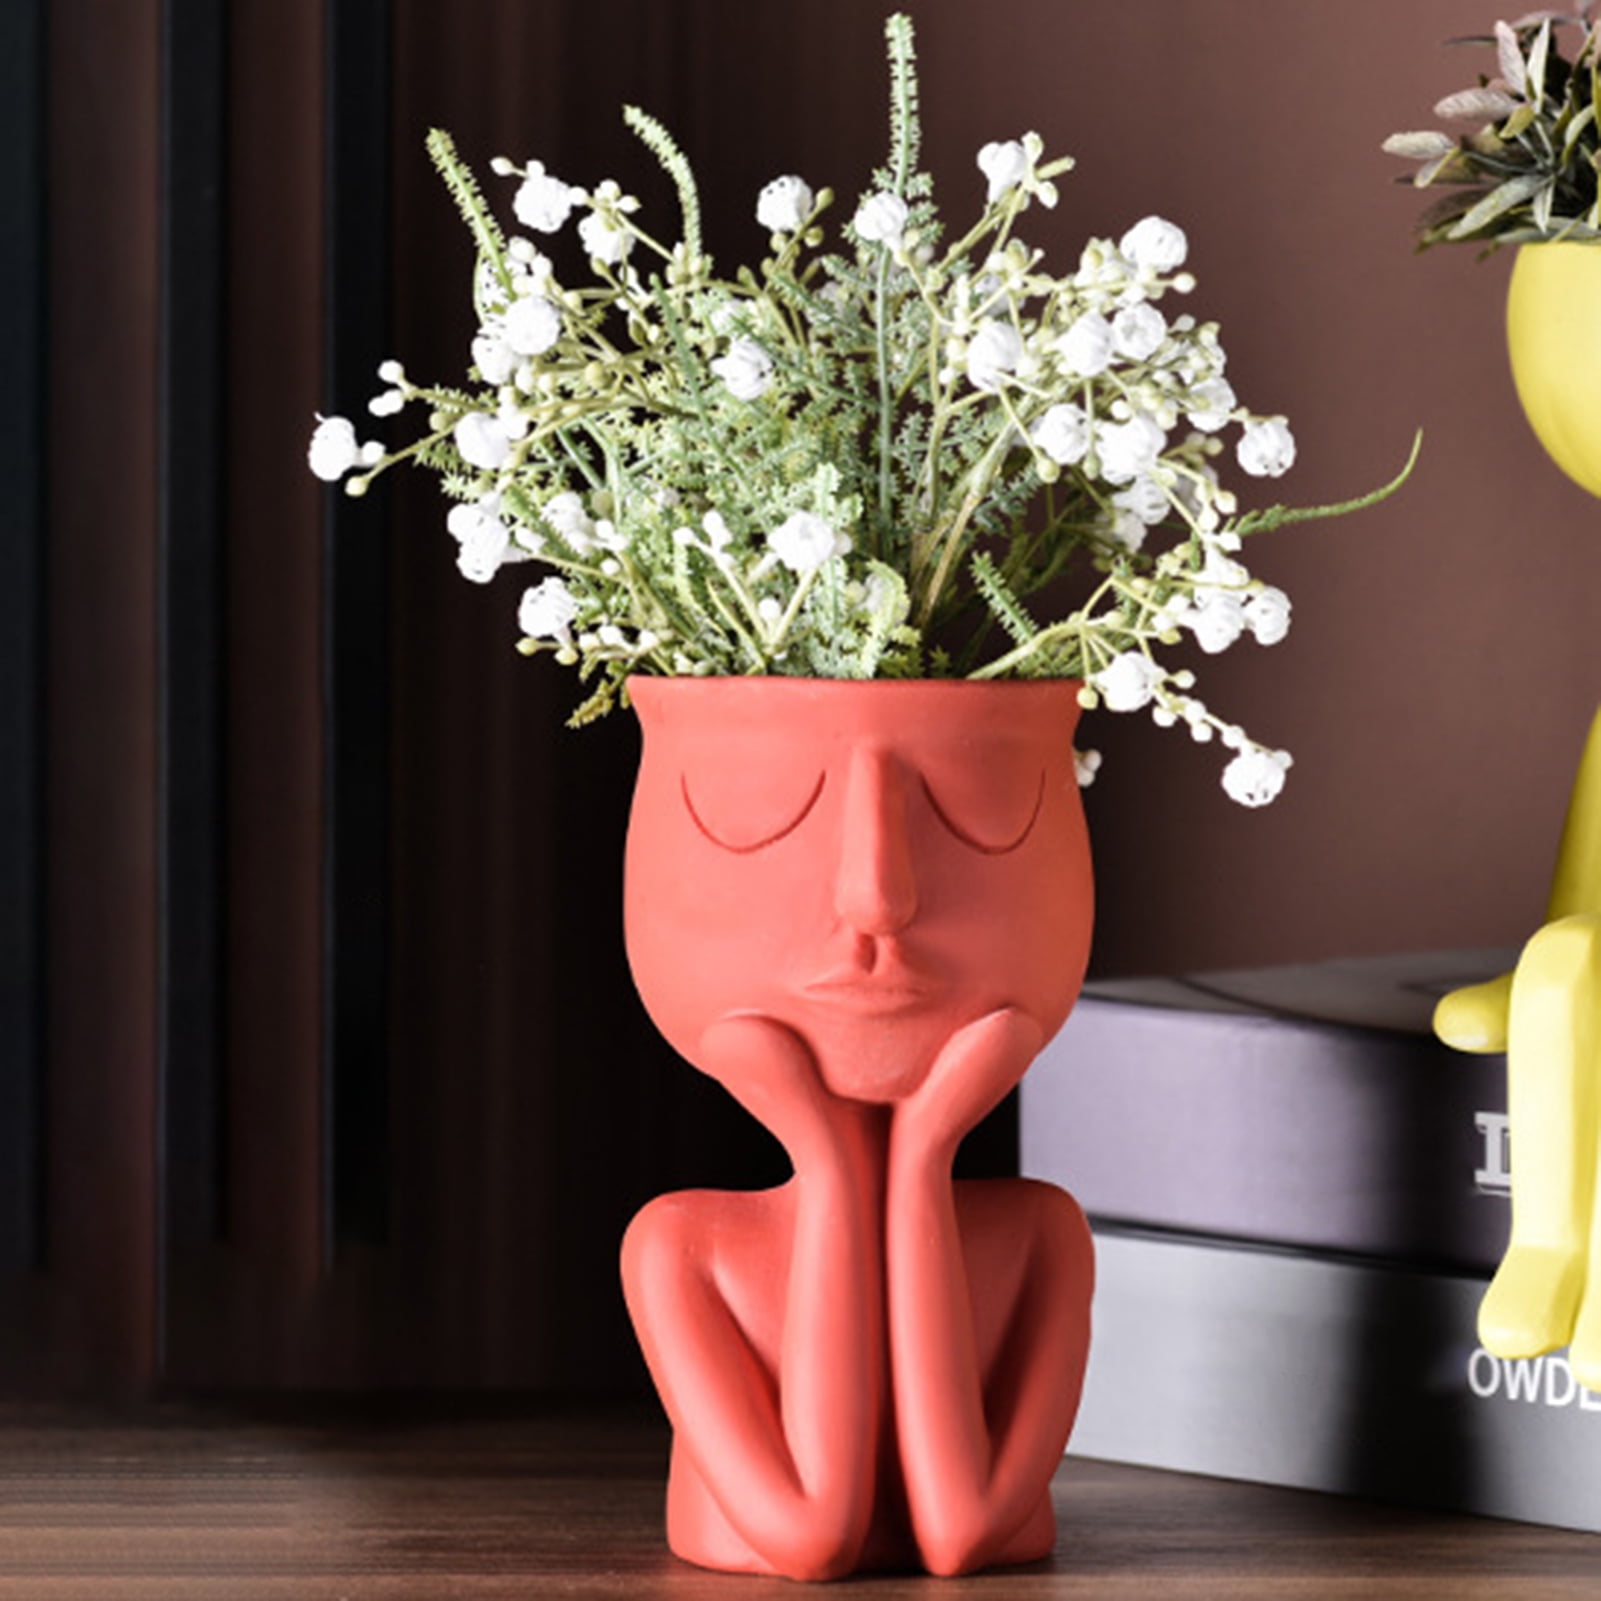 Orange Flower Vase Human Body Face Vase Modern Floral Arrangement Vase Succulent Pots for Home Office Dinner Tabletop Decor 